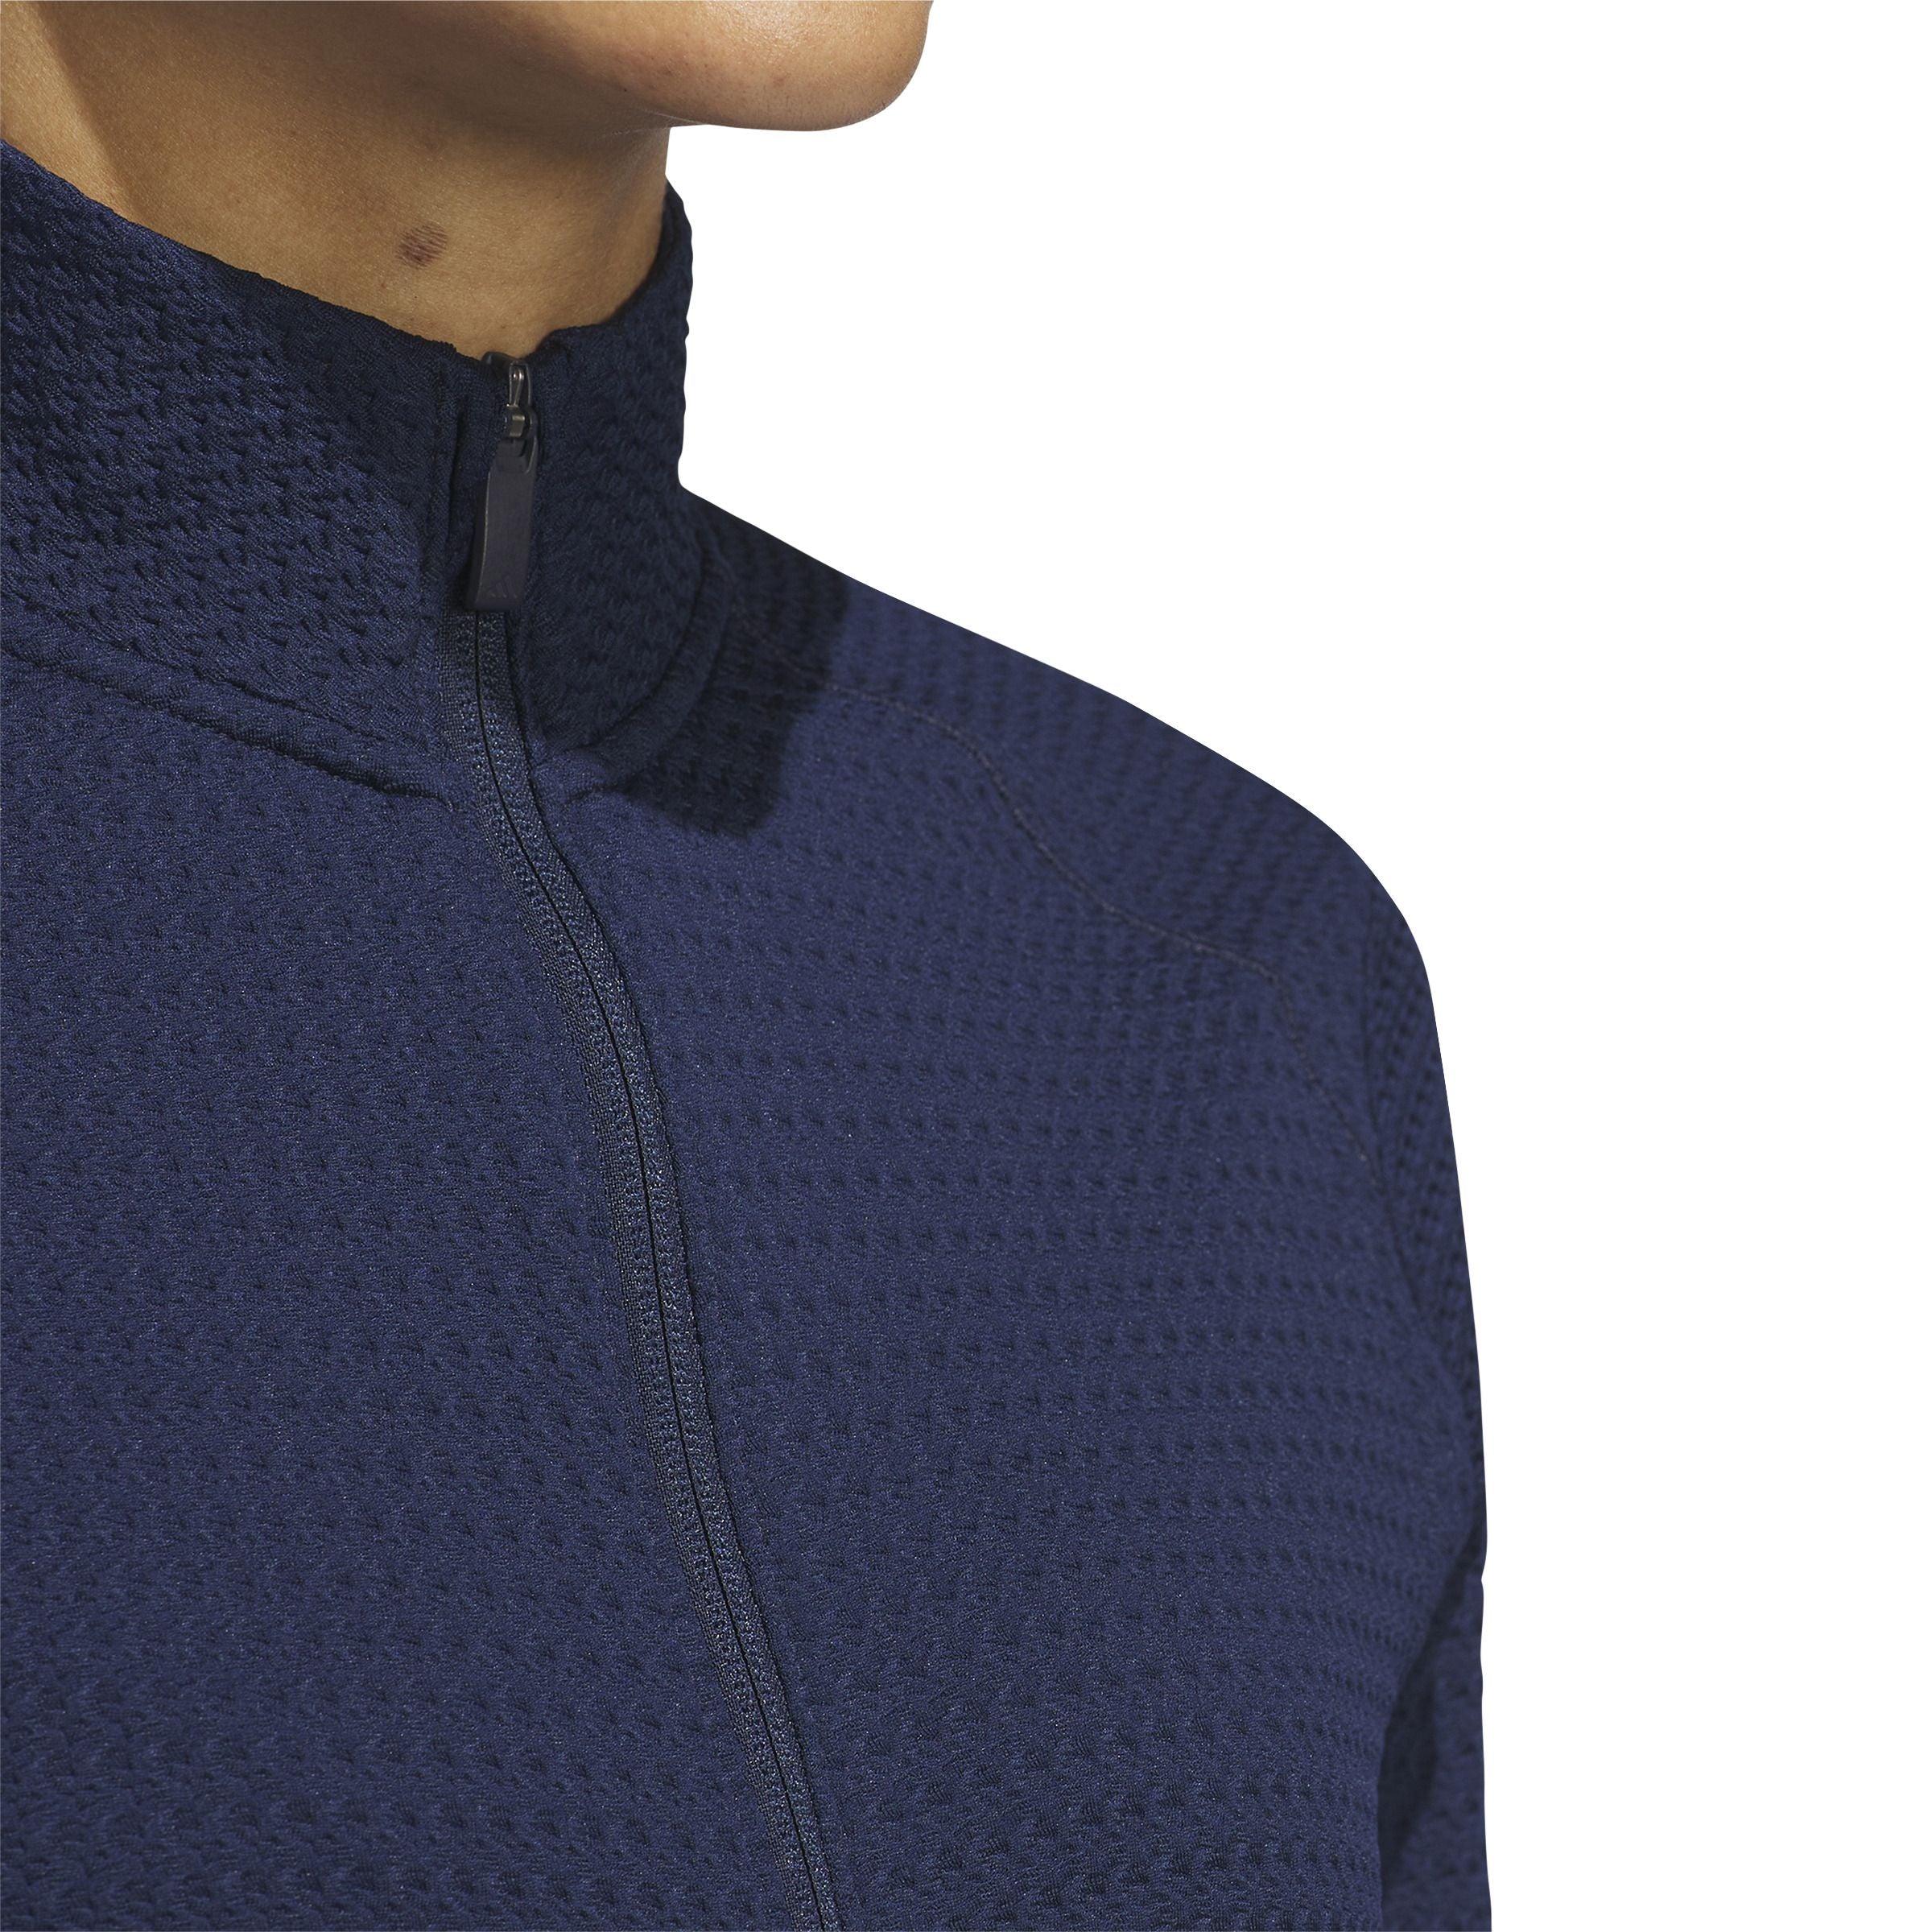 Adidas Ultimate365 Textured Jacket